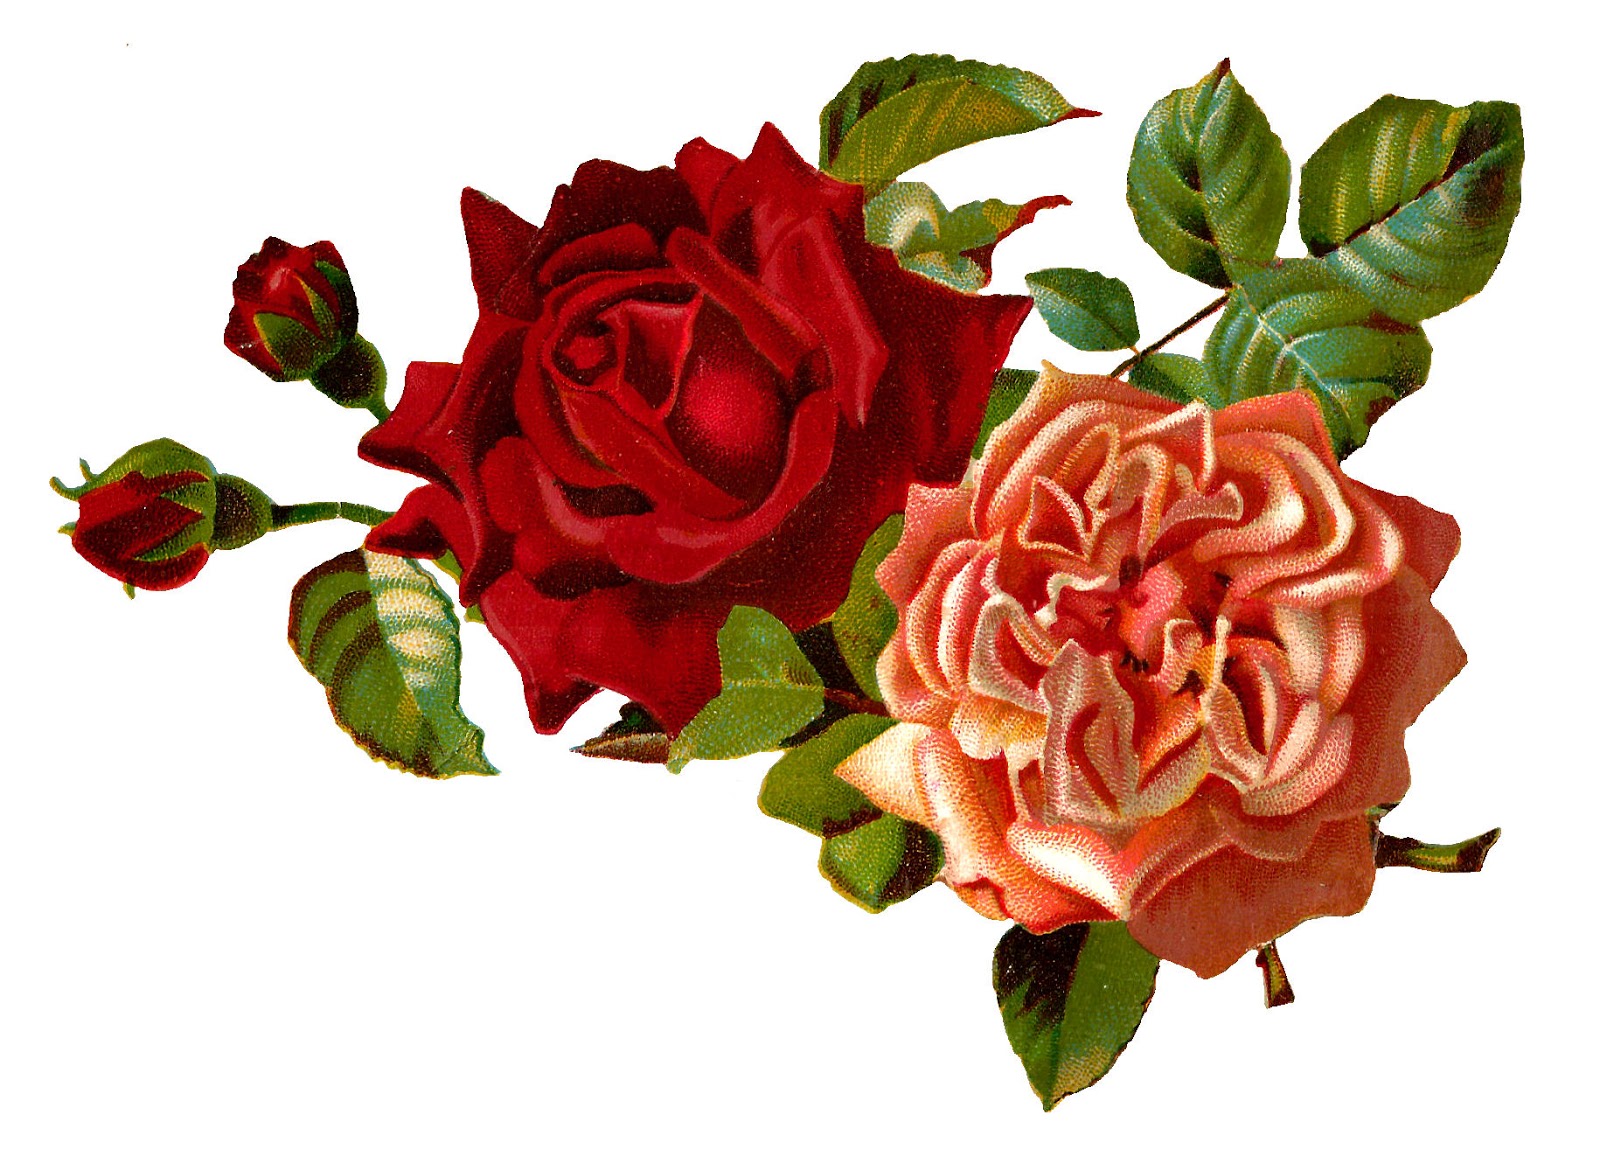 Antique Images Stock Rose Flowers Digital Images Corner Design